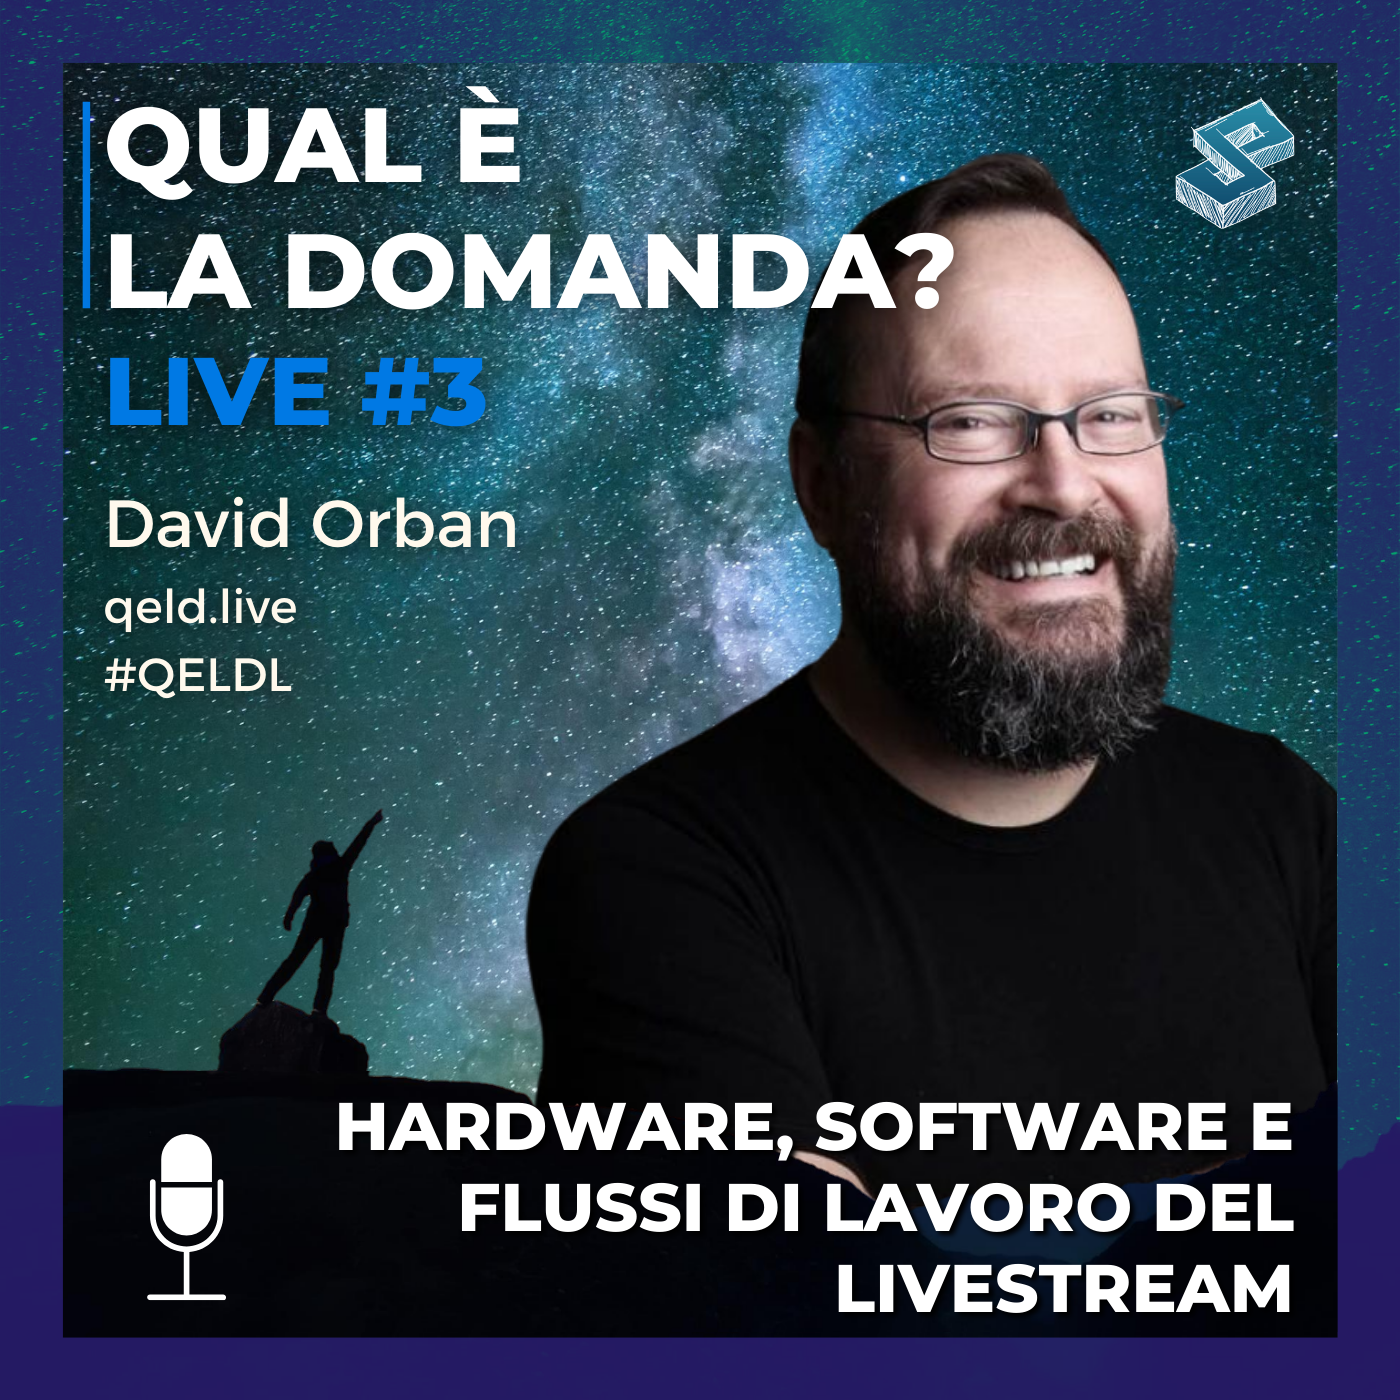 Hardware, software e flussi di lavoro del livestream - QELDL #3